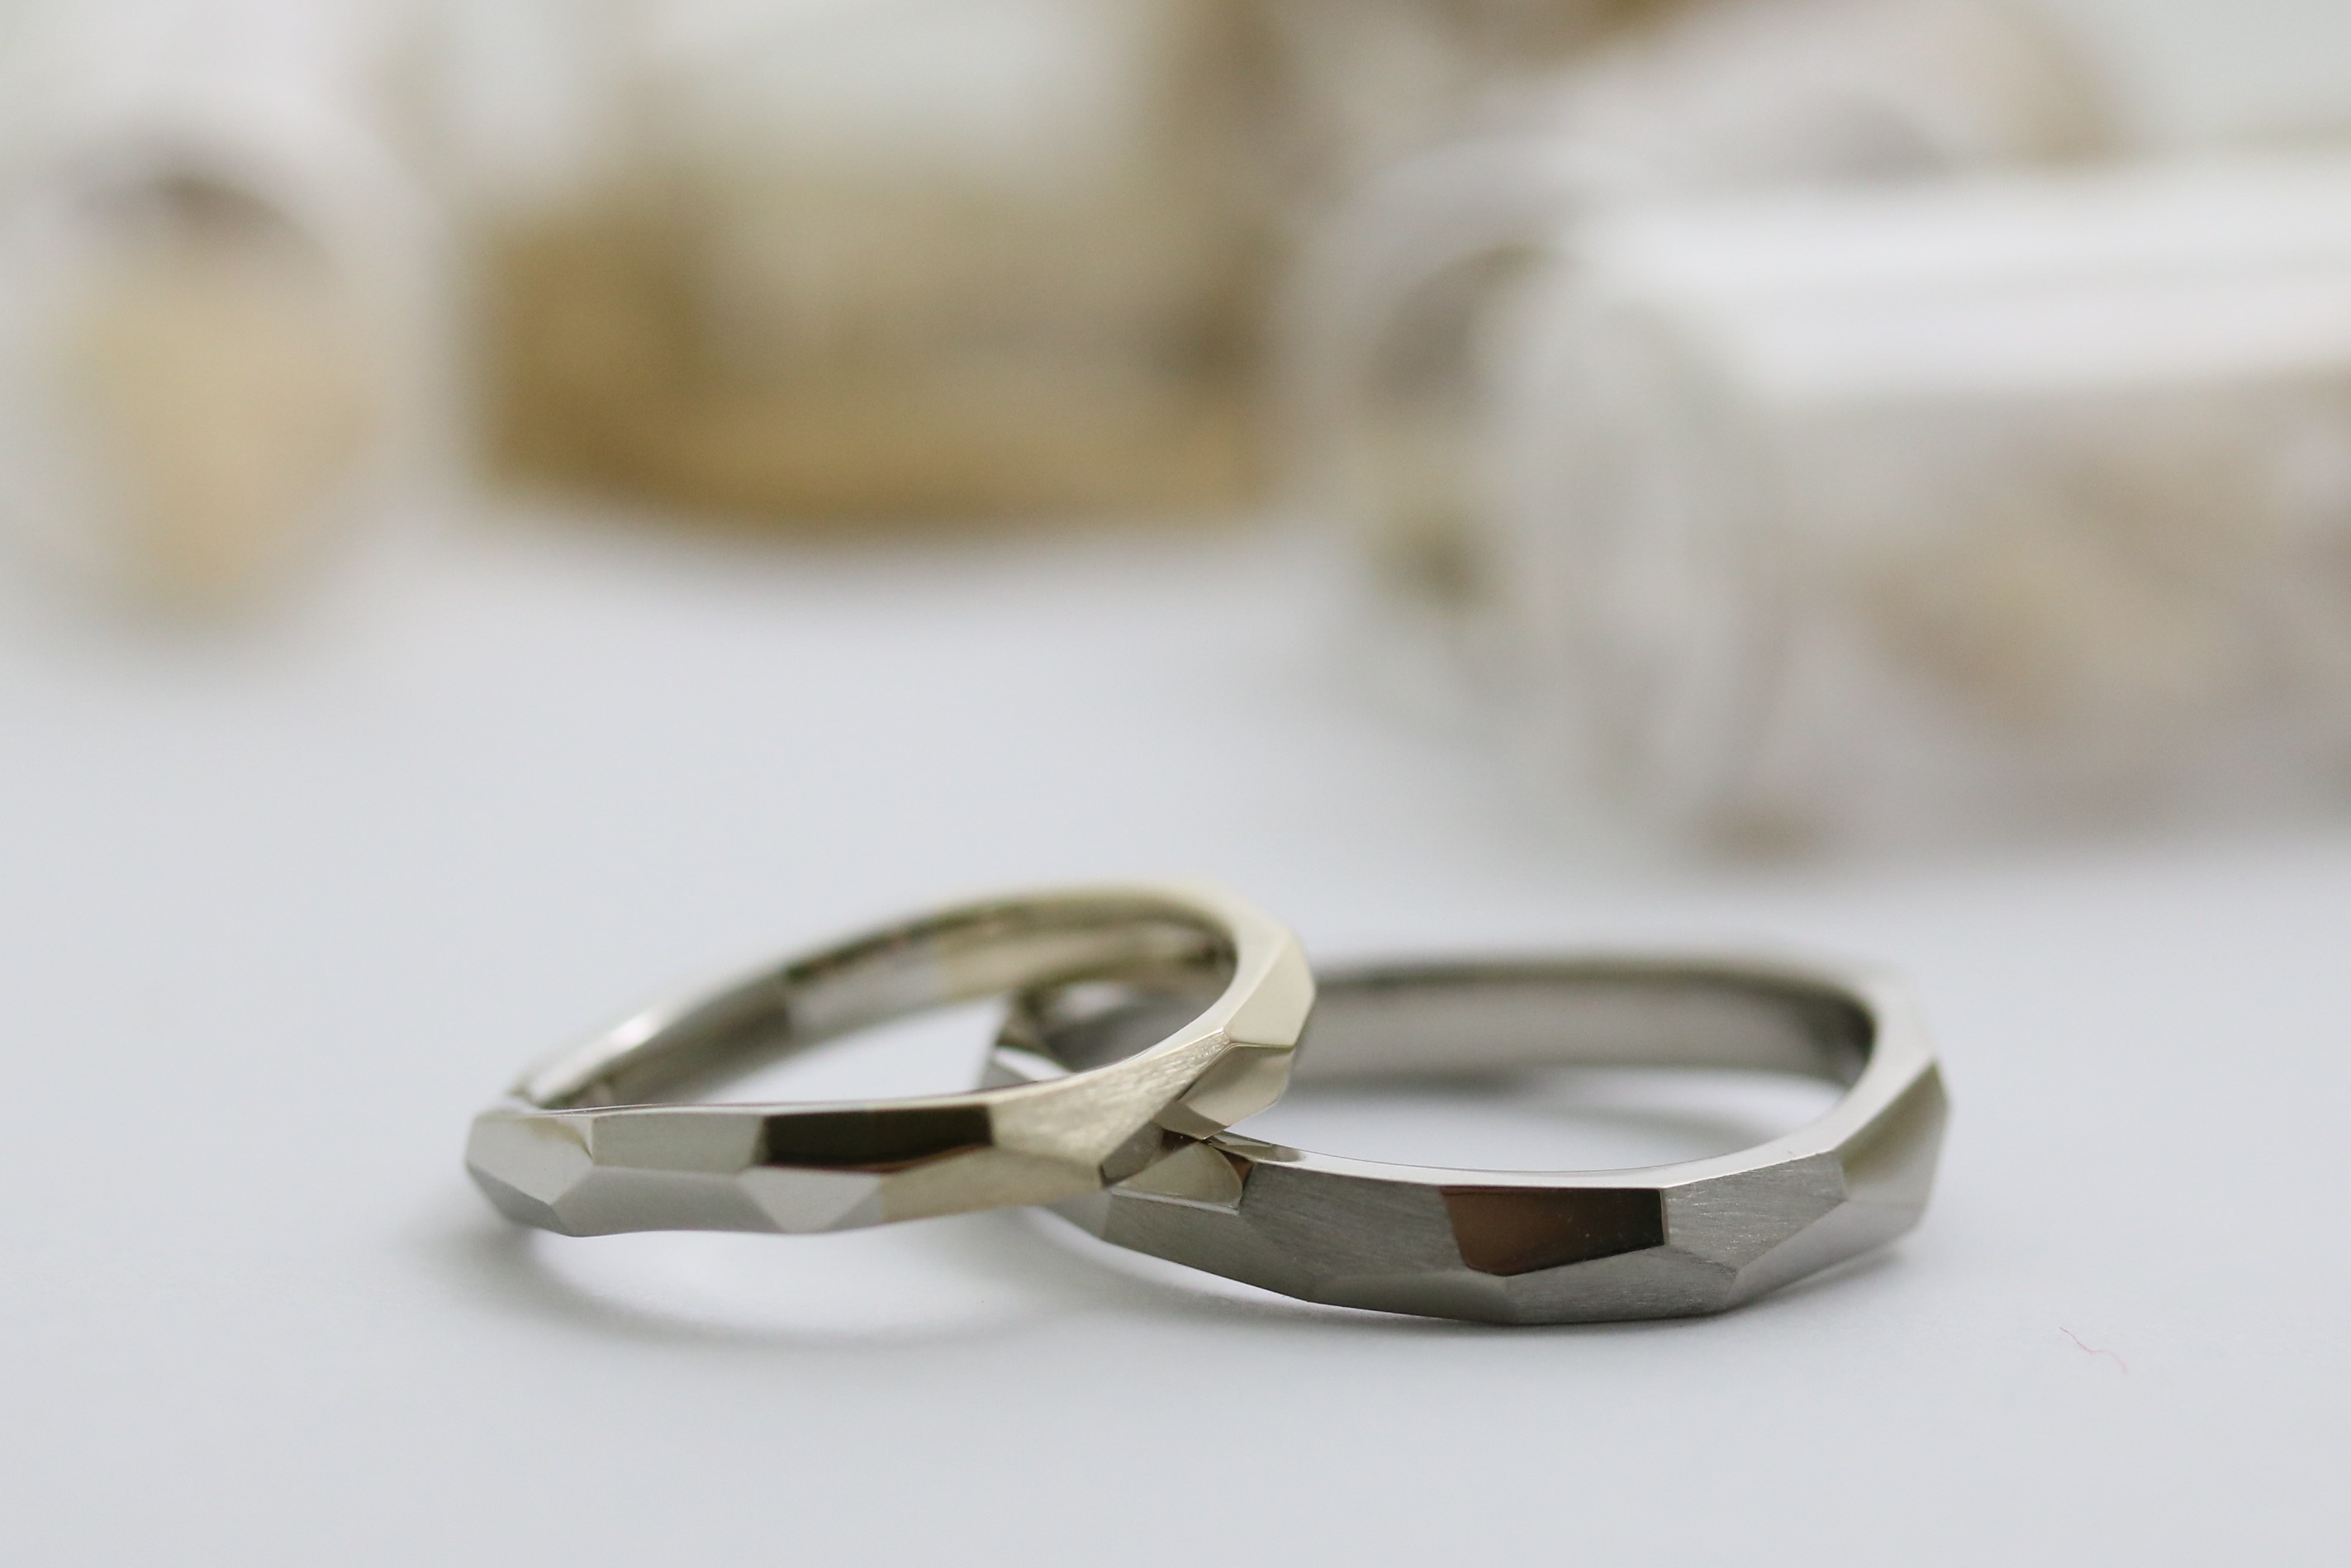 手作りペアリング 関西 神戸 大阪で結婚指輪 婚約指輪 遺骨リング 遺骨ペンダントを手作りとオーダーメイドが出来るアトリエ